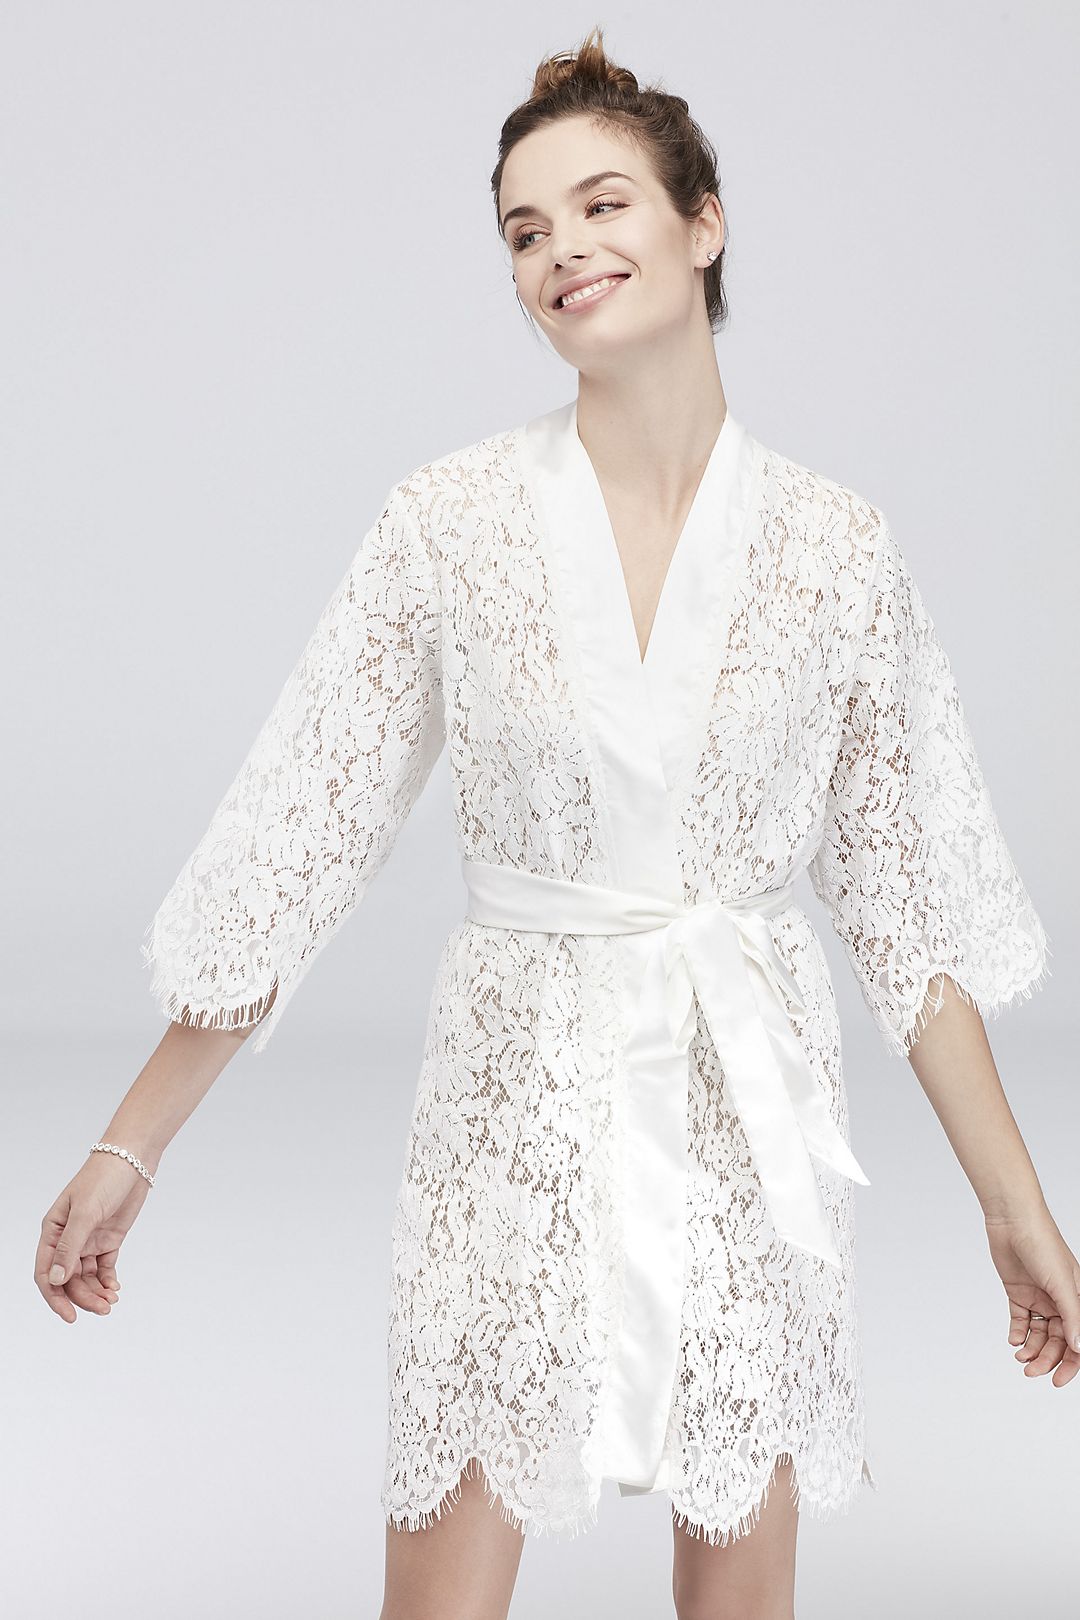 White Bridal Lace Robe Image